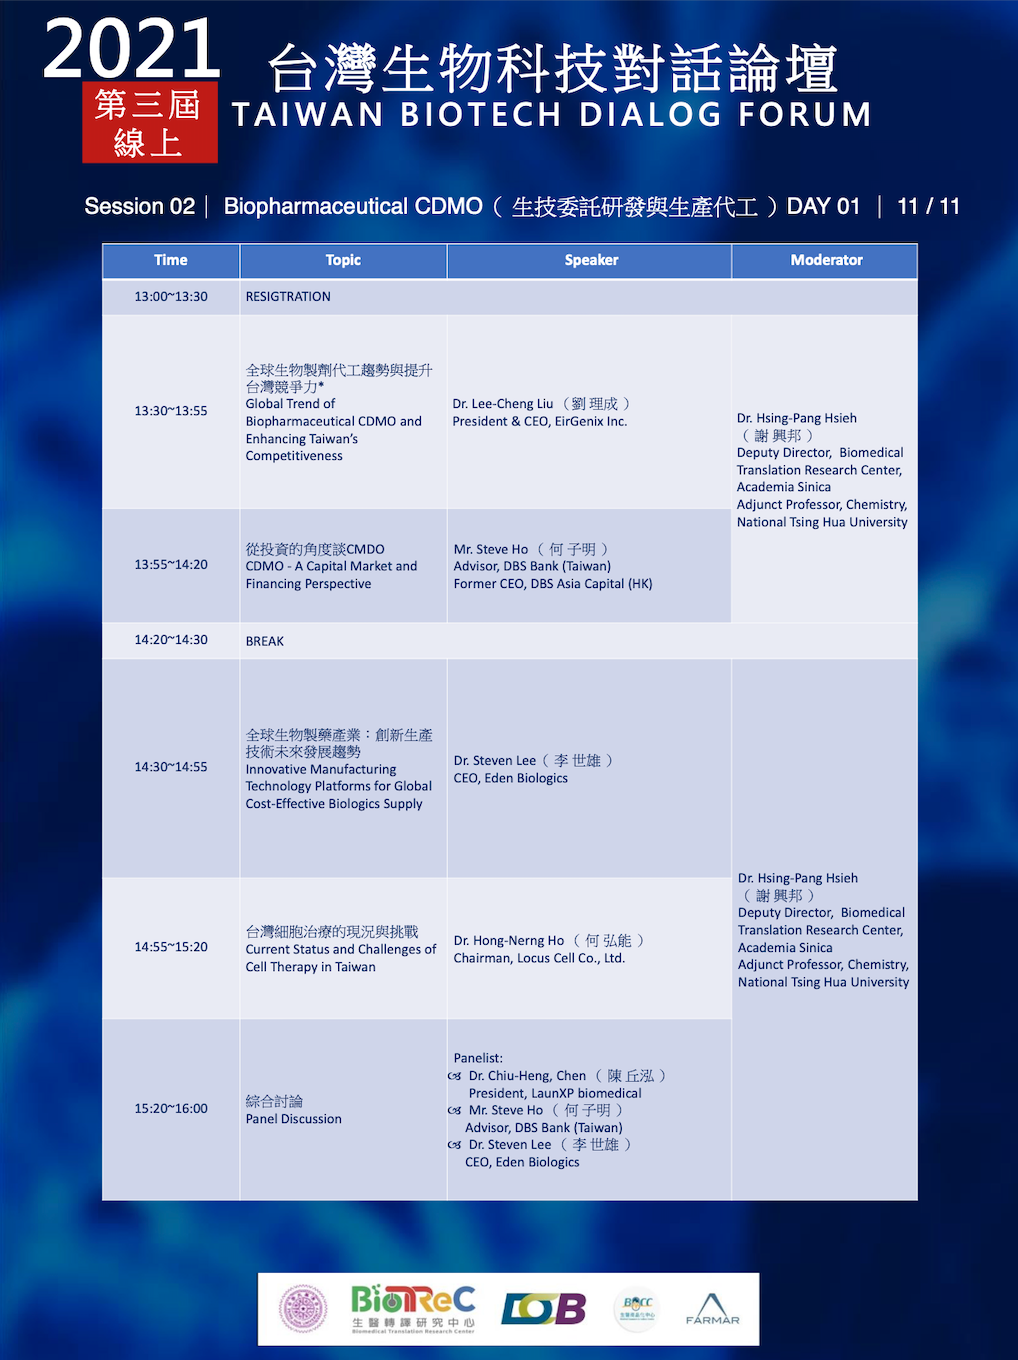 2021台灣生物科技對話論壇議程，下午13:30開始，16:00結束